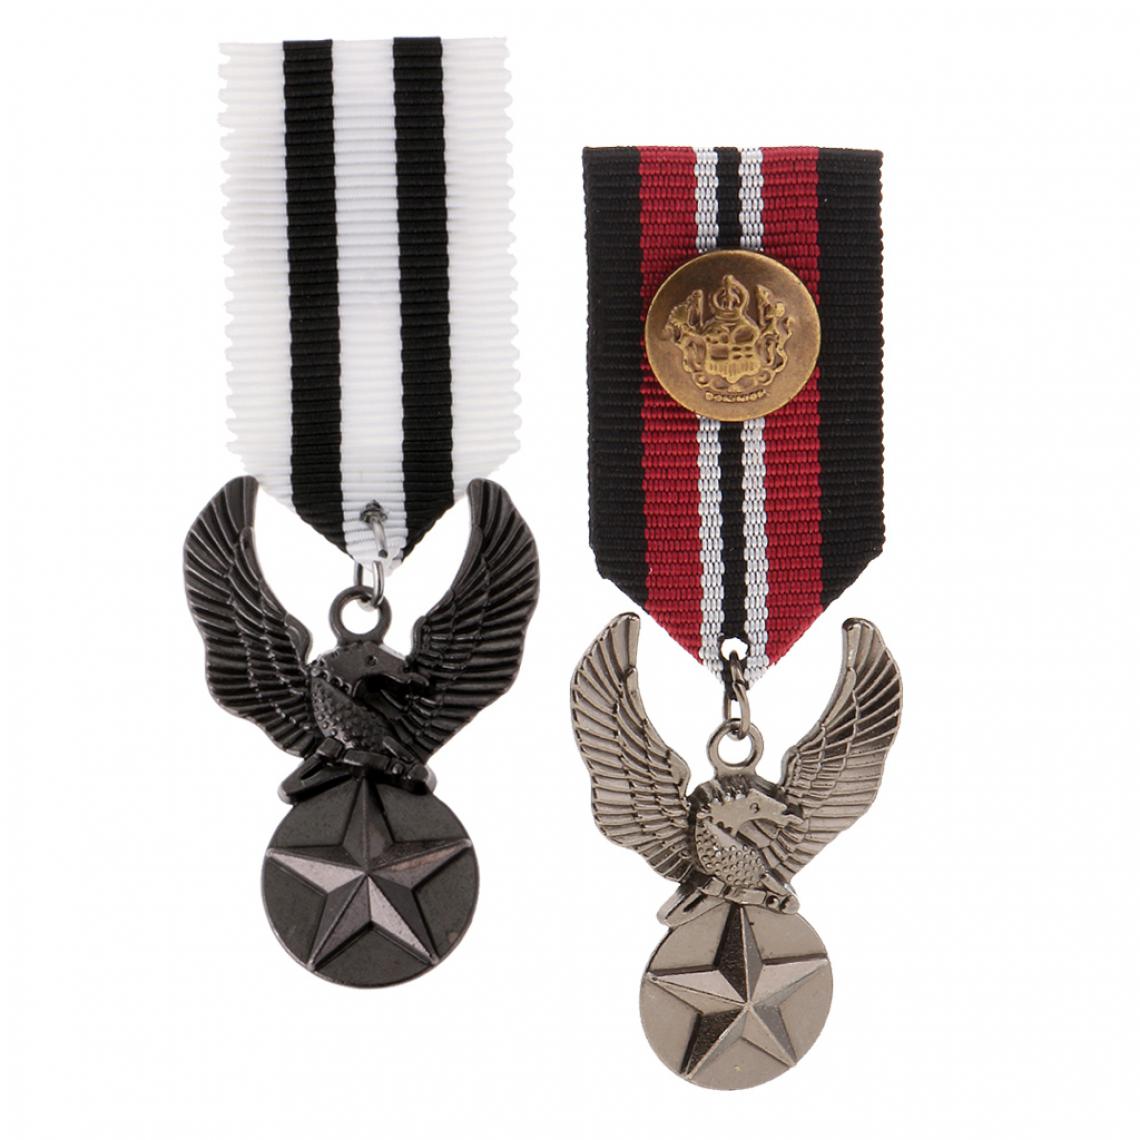 marque generique - 2pcs Broches Étoile Aigle Médaille Militaire Uniforme Broche Steampunk Badge Gothiques - Broches de maçon